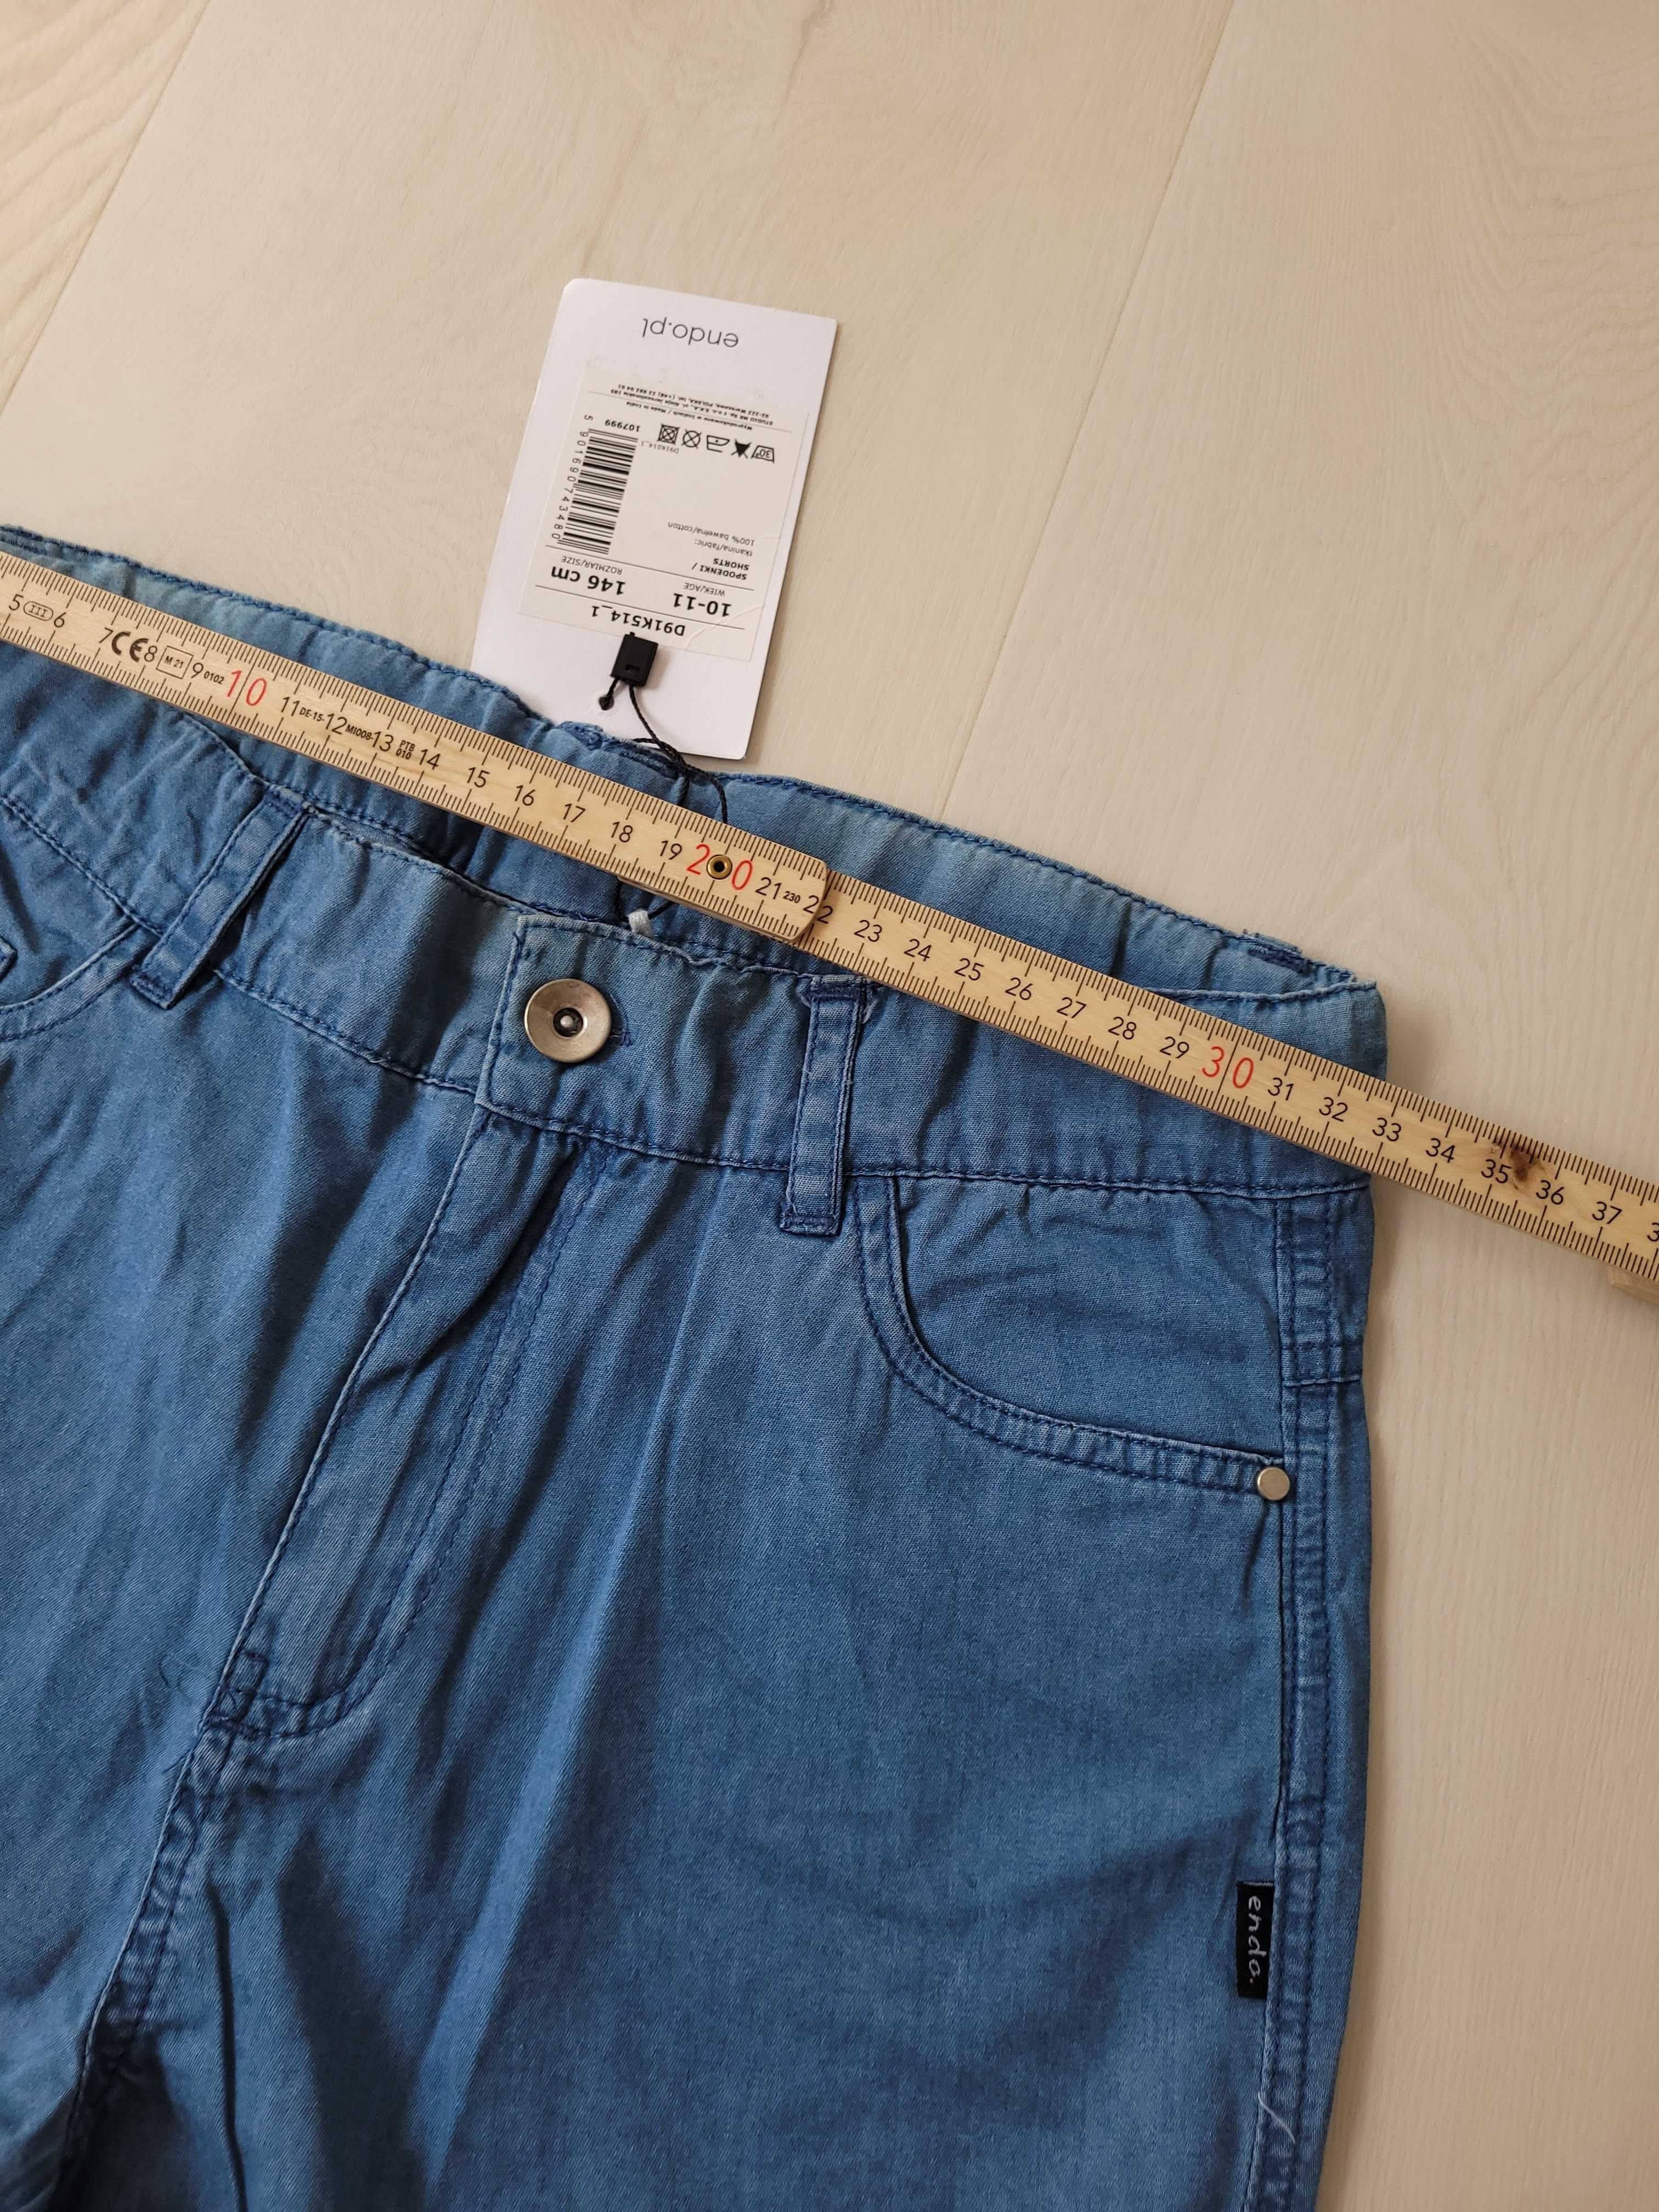 NOWE krótkie spodenki szorty jeans ENDO 146 cm 10-11